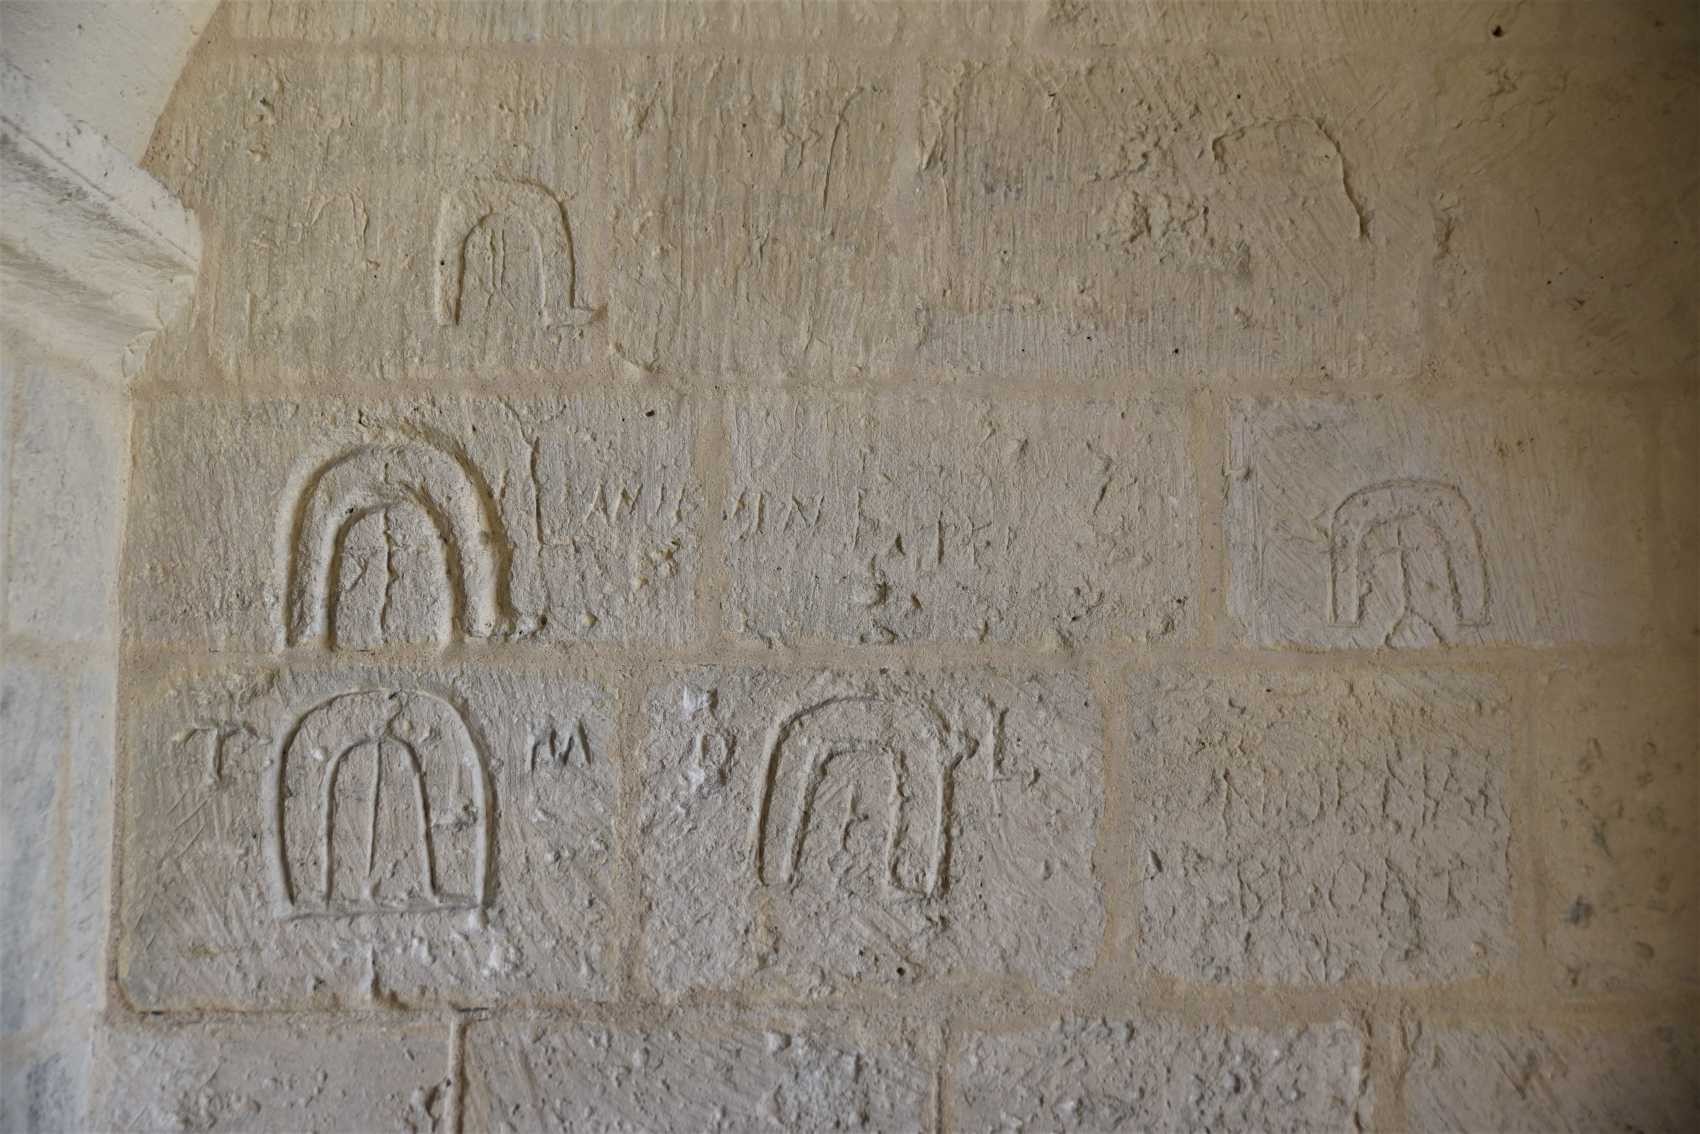 Gros plan des graffiti médiévaux. A droite la représentation d'une église